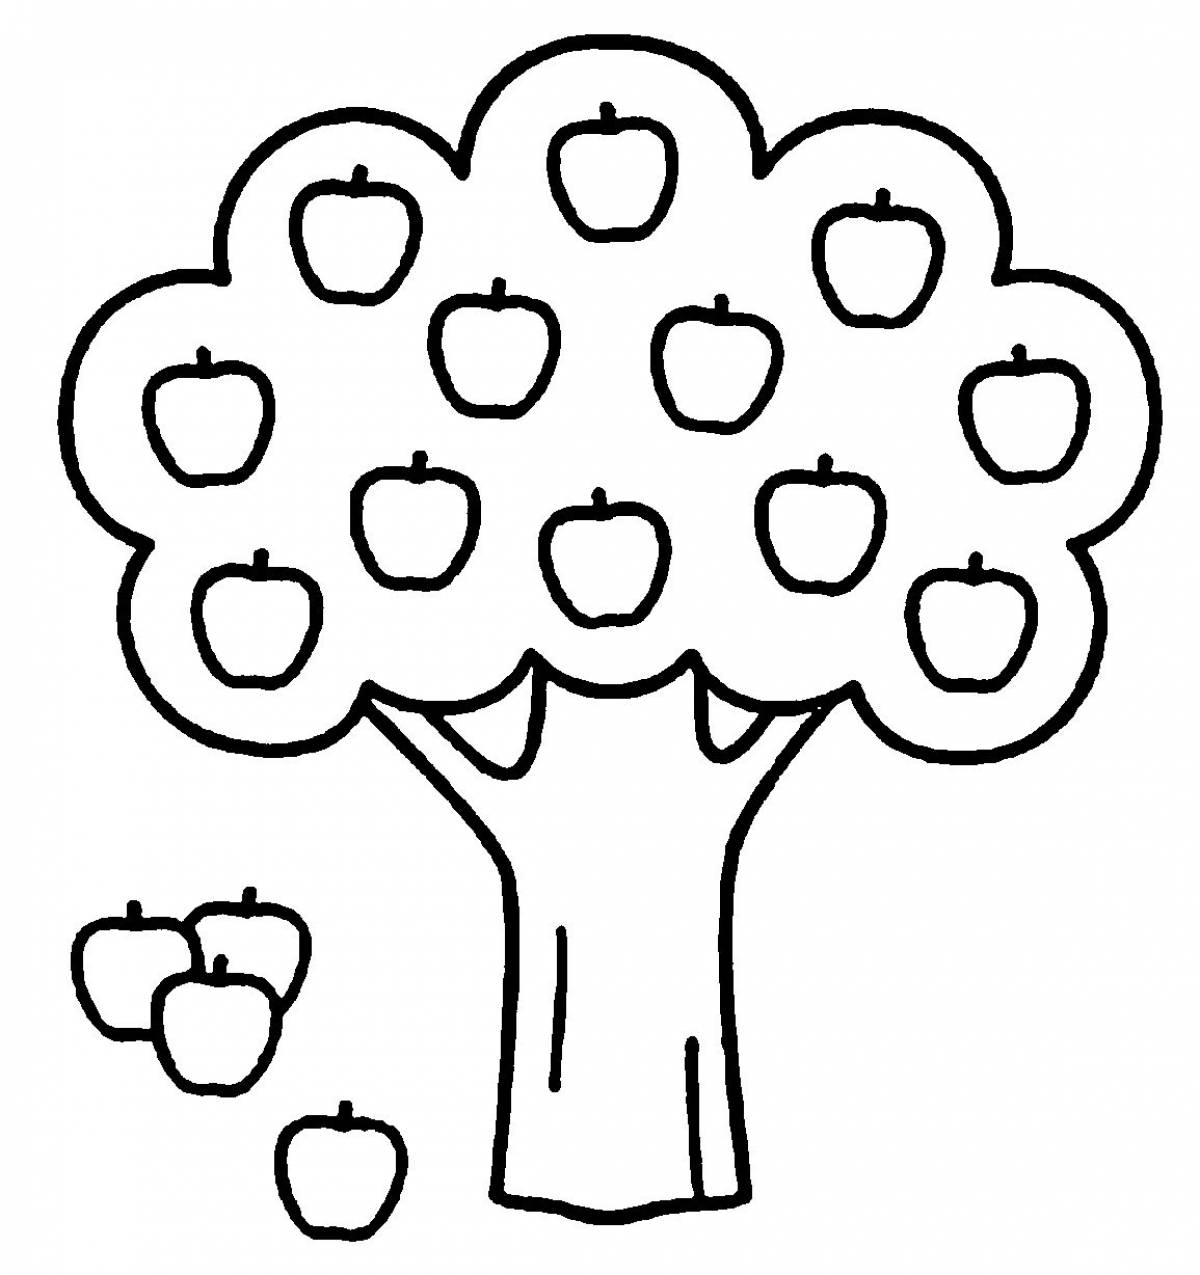 Раскраска дерево яблоня с яблоками для детей